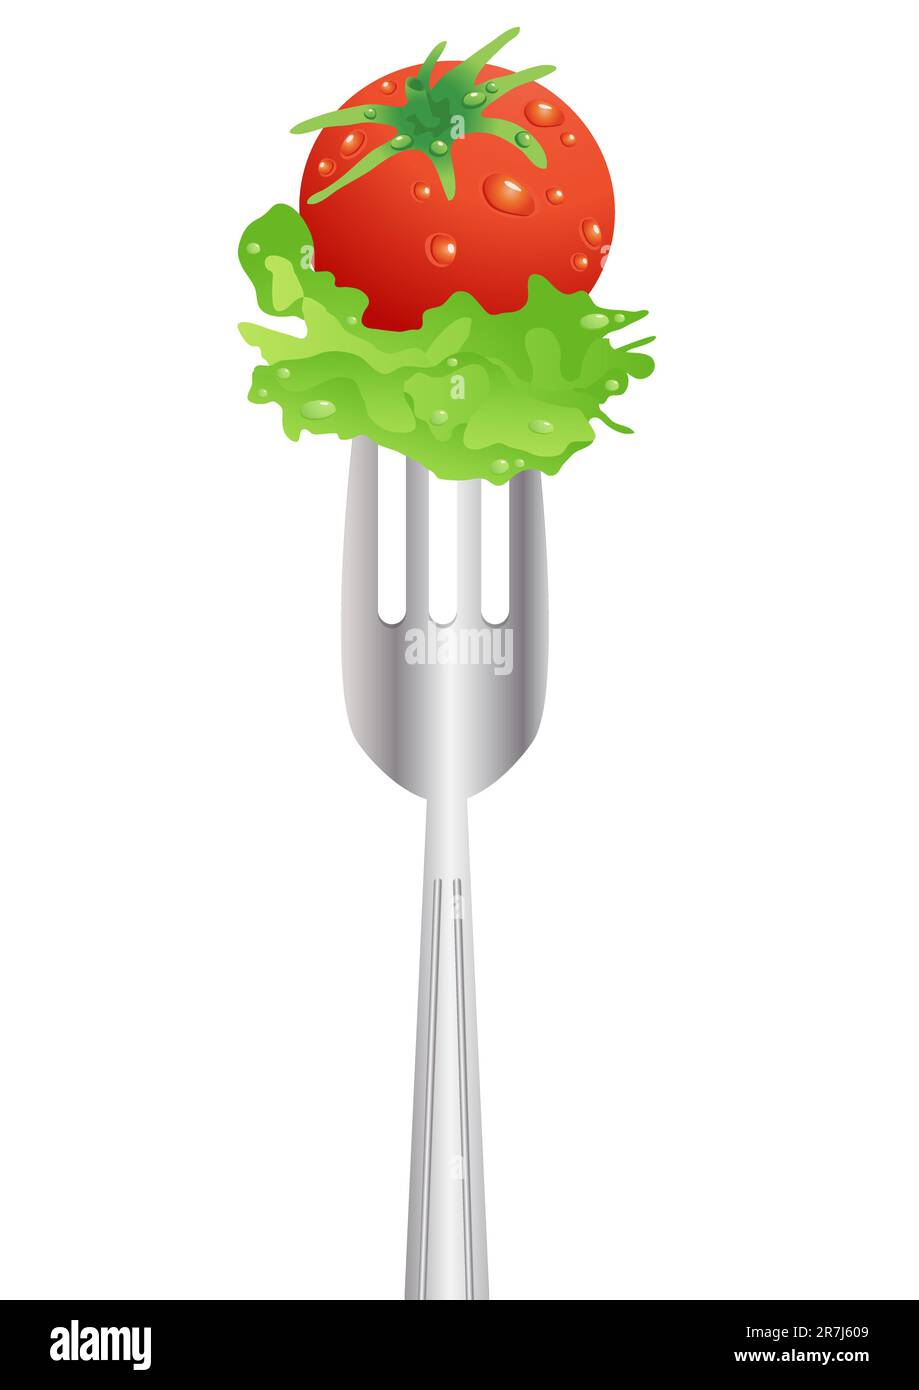 image vectorielle de la tomate rouge fraîche et de la salade sur une fourchette sur fond blanc Illustration de Vecteur